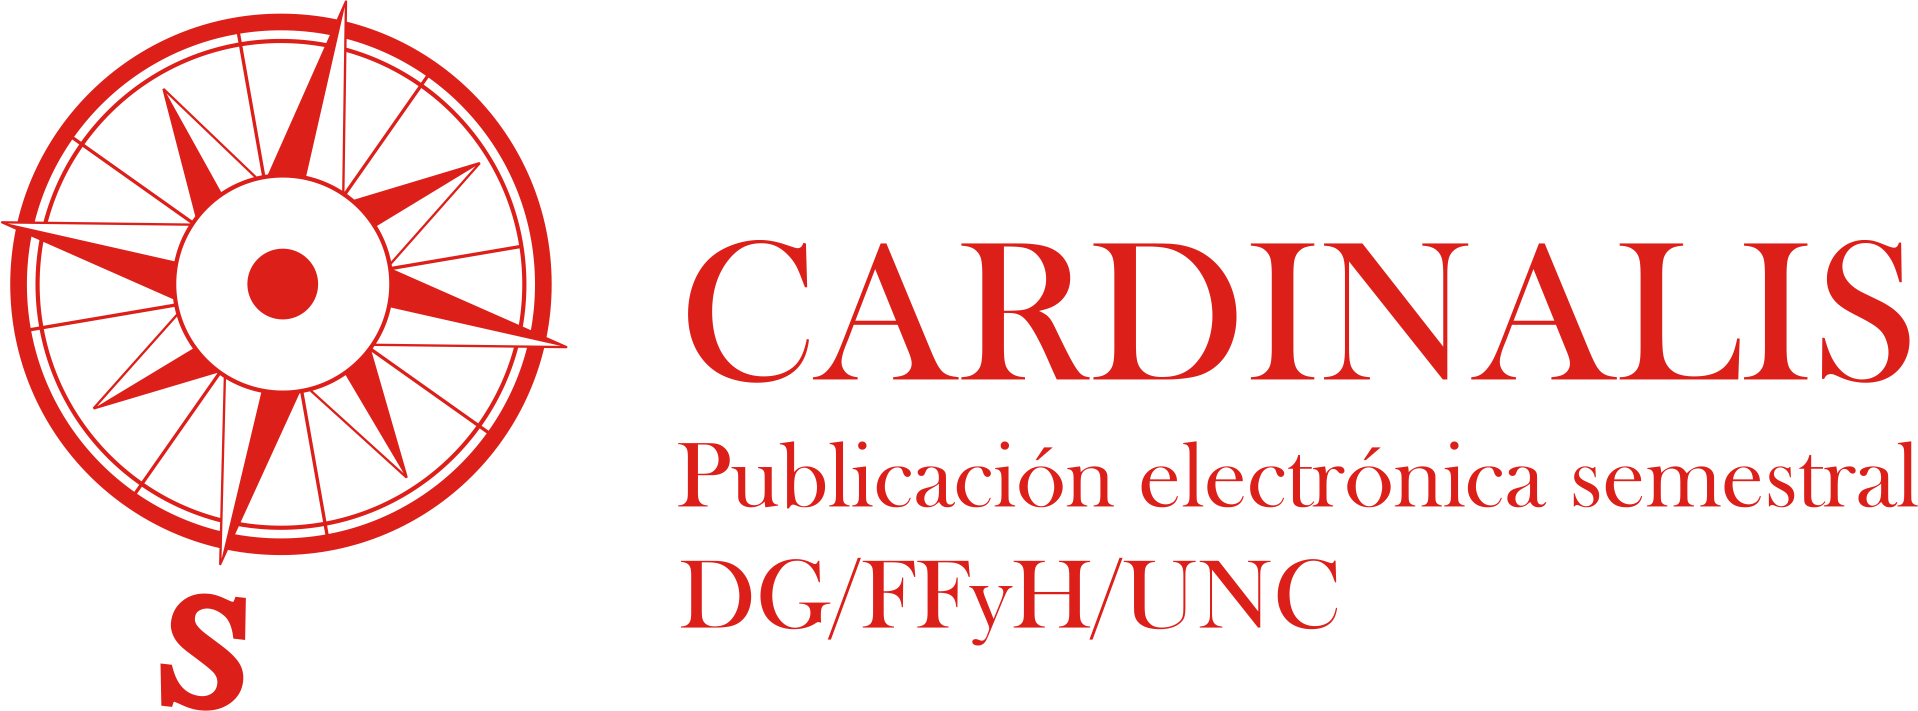 Revista Cardinalis. Departamento de Geografía, Facultad de Filosofía y Humanidades. Universidad Nacional de Córdoba